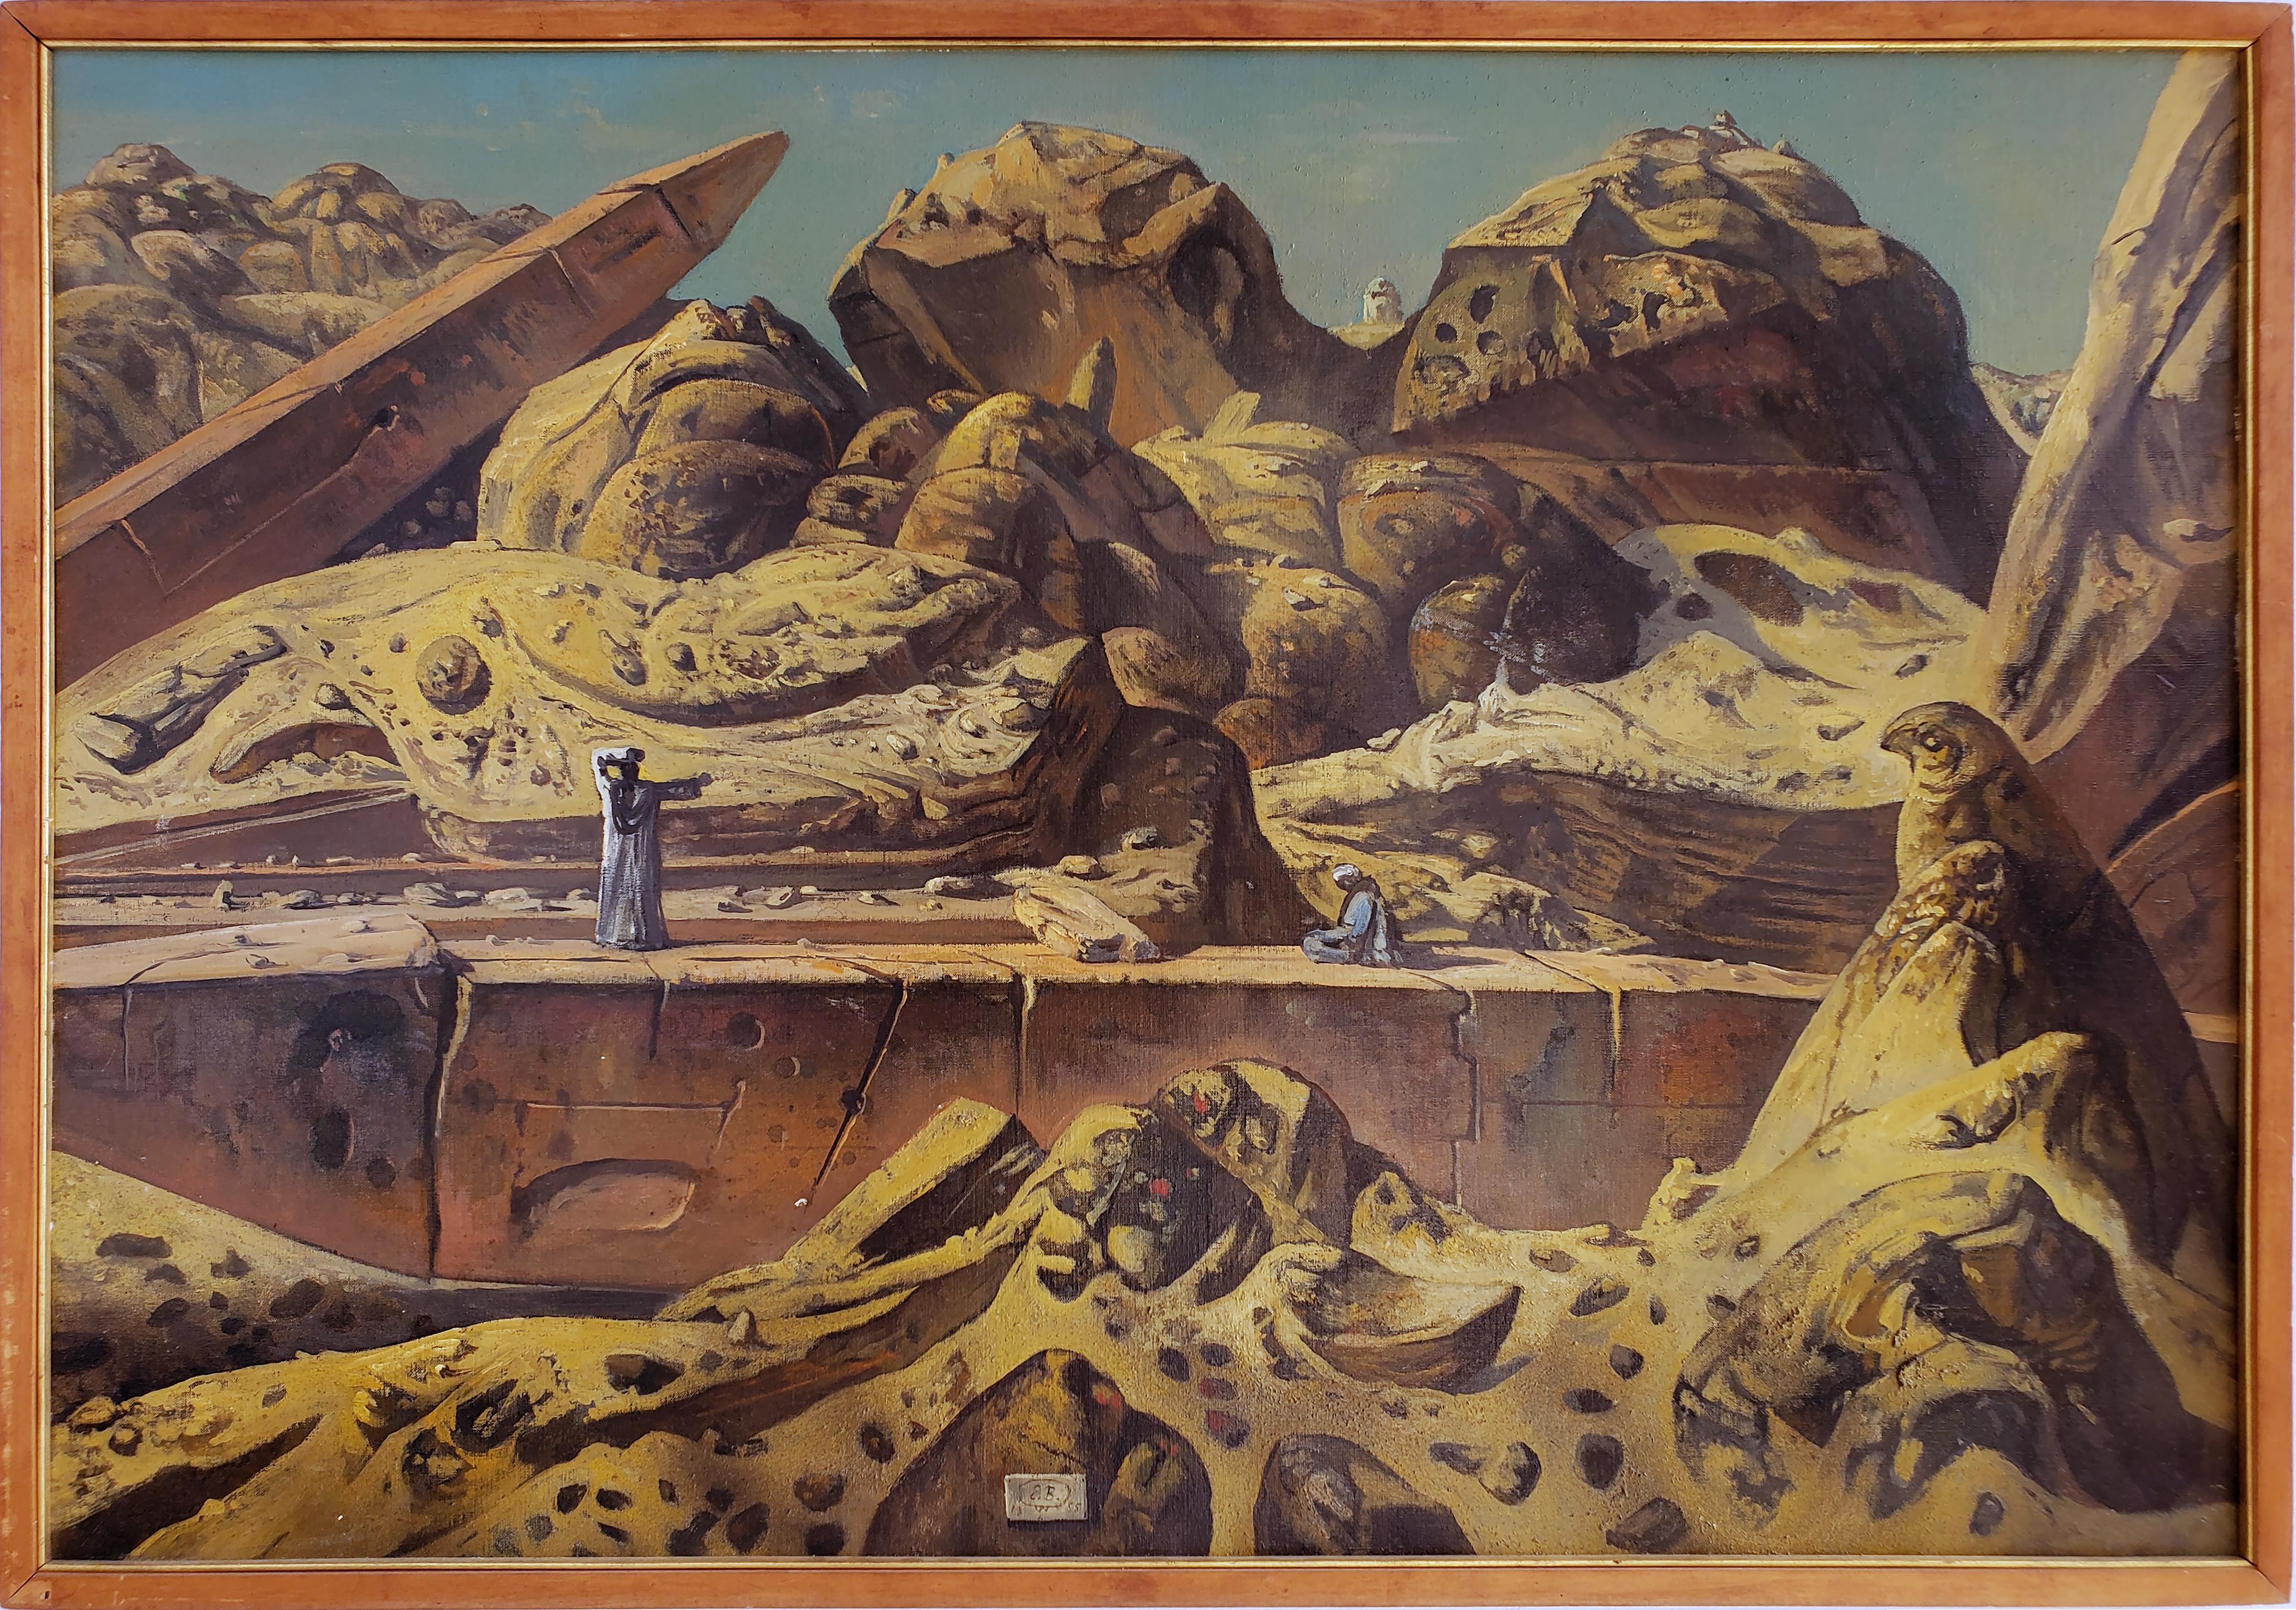 Egypt Aswan Desert Landscape with Two Obelisks - Painting by Eugene Berman